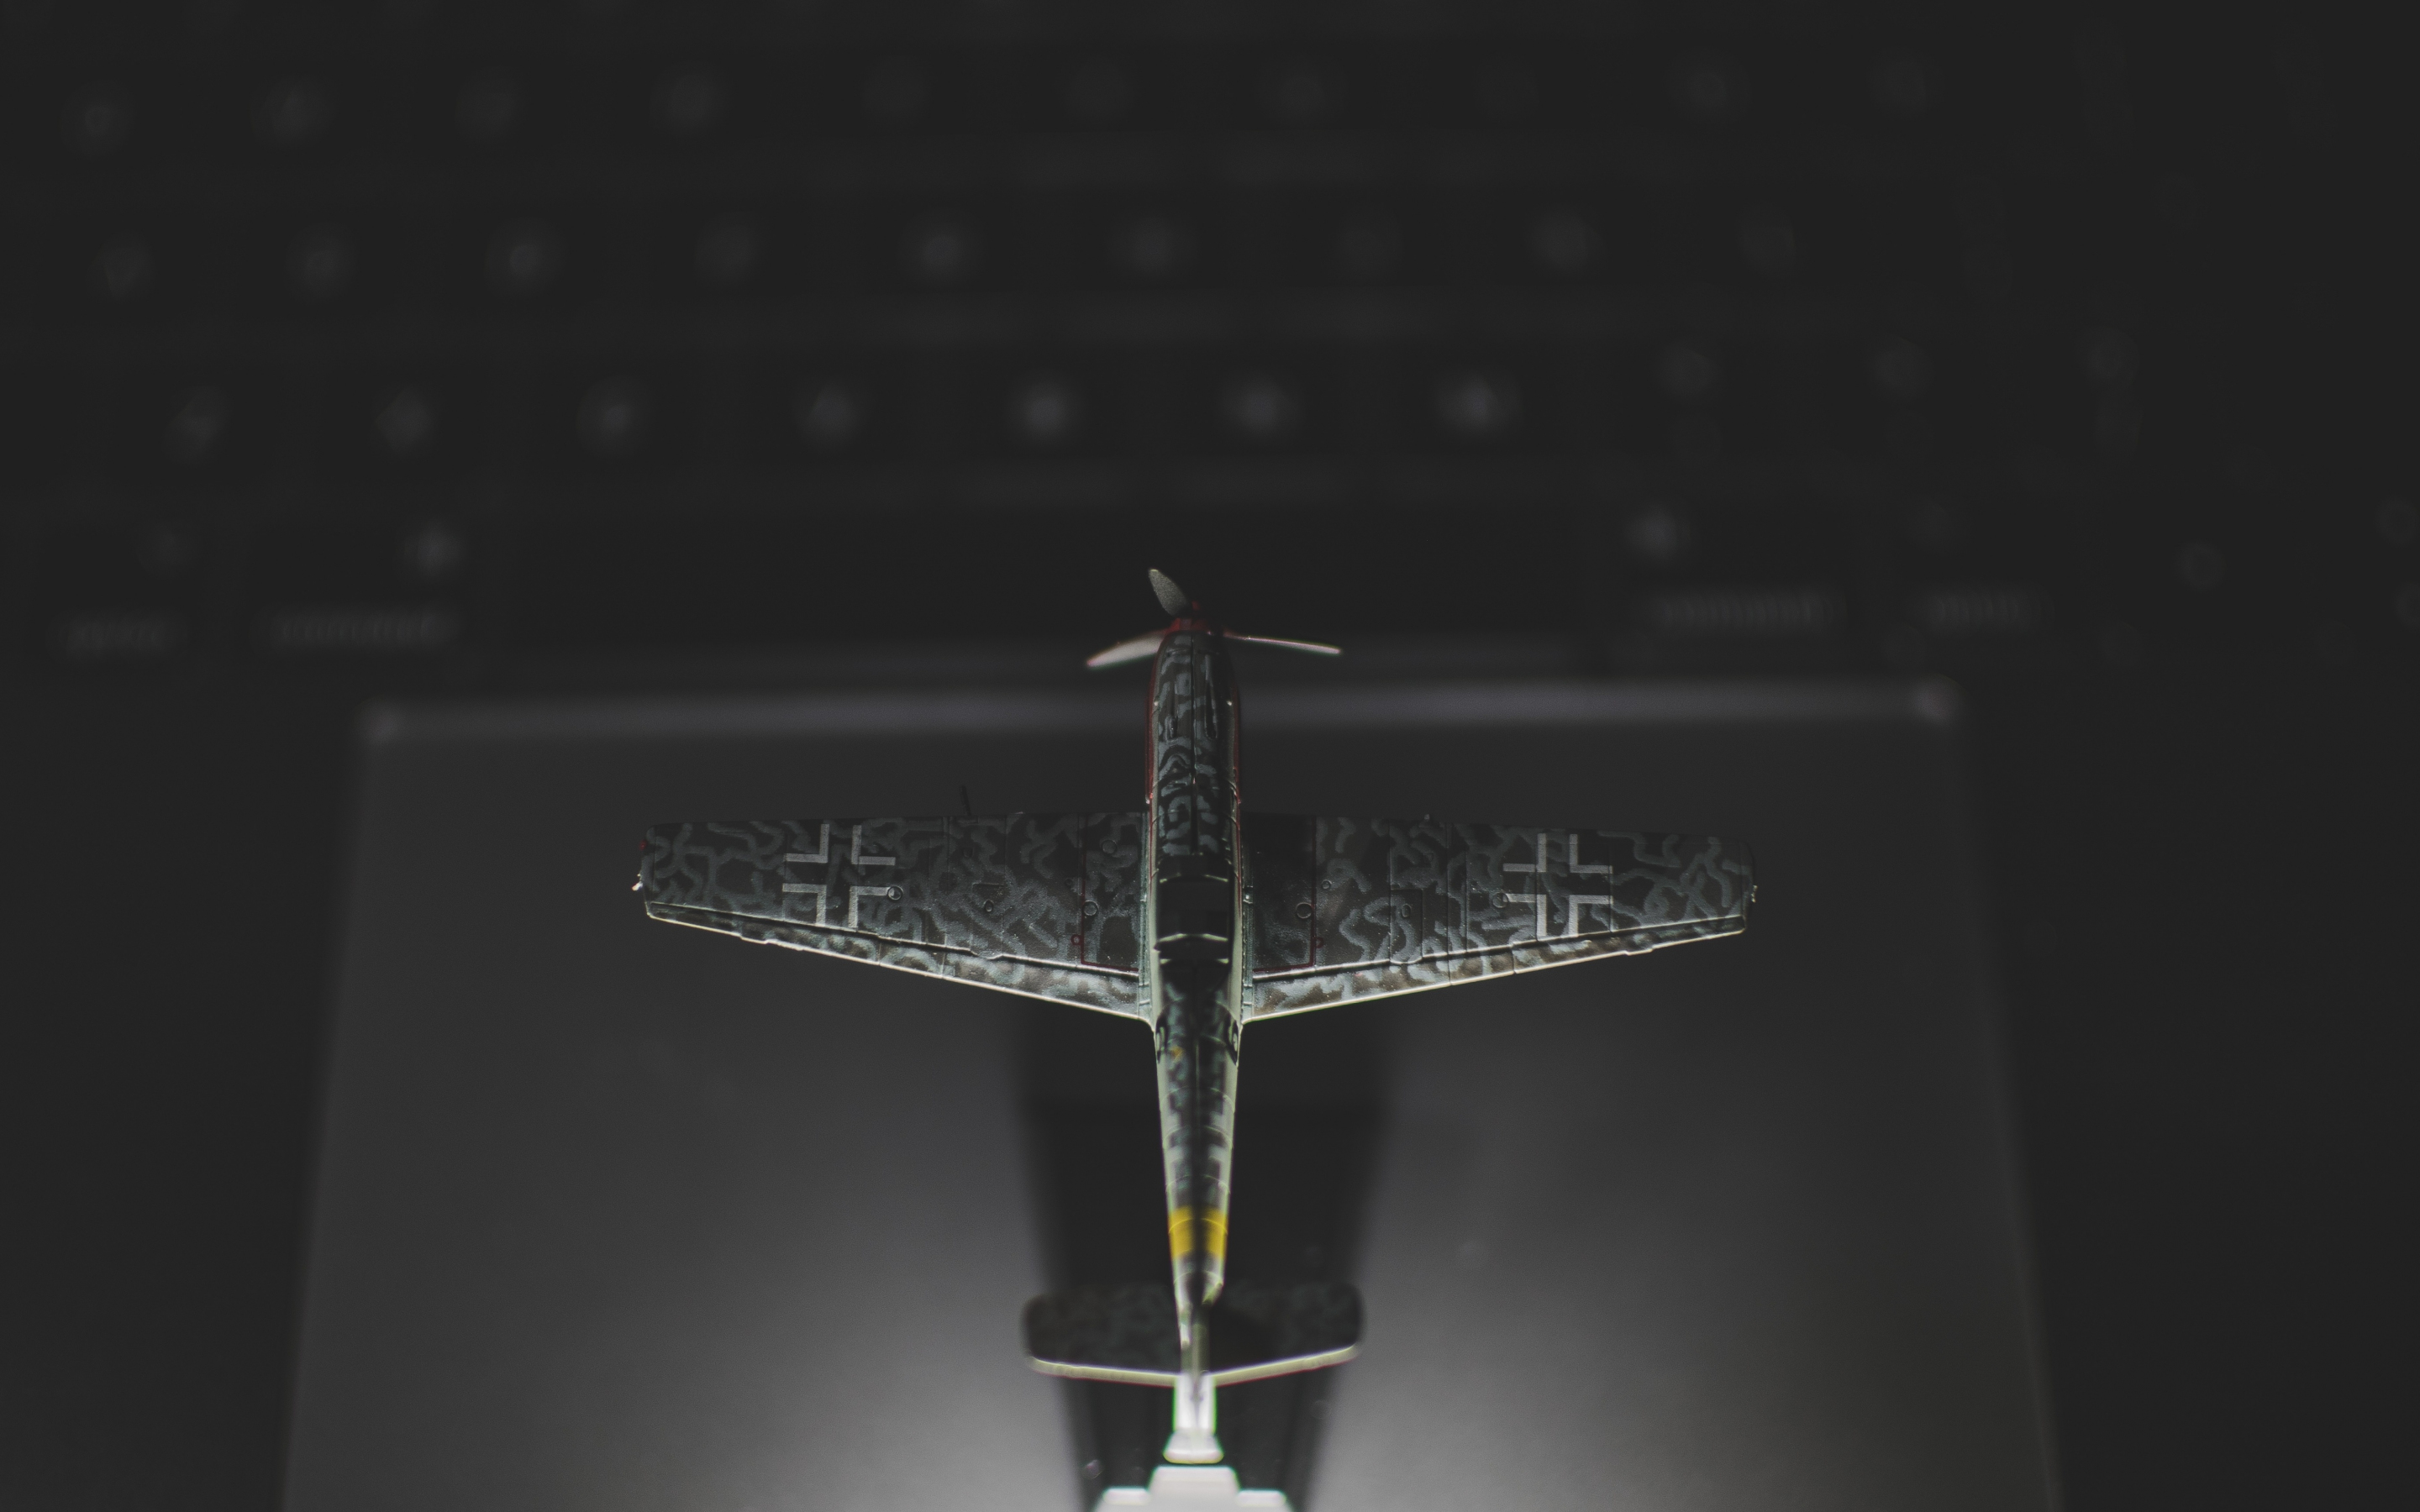 Airplane, toy, dark, 2880x1800 wallpaper